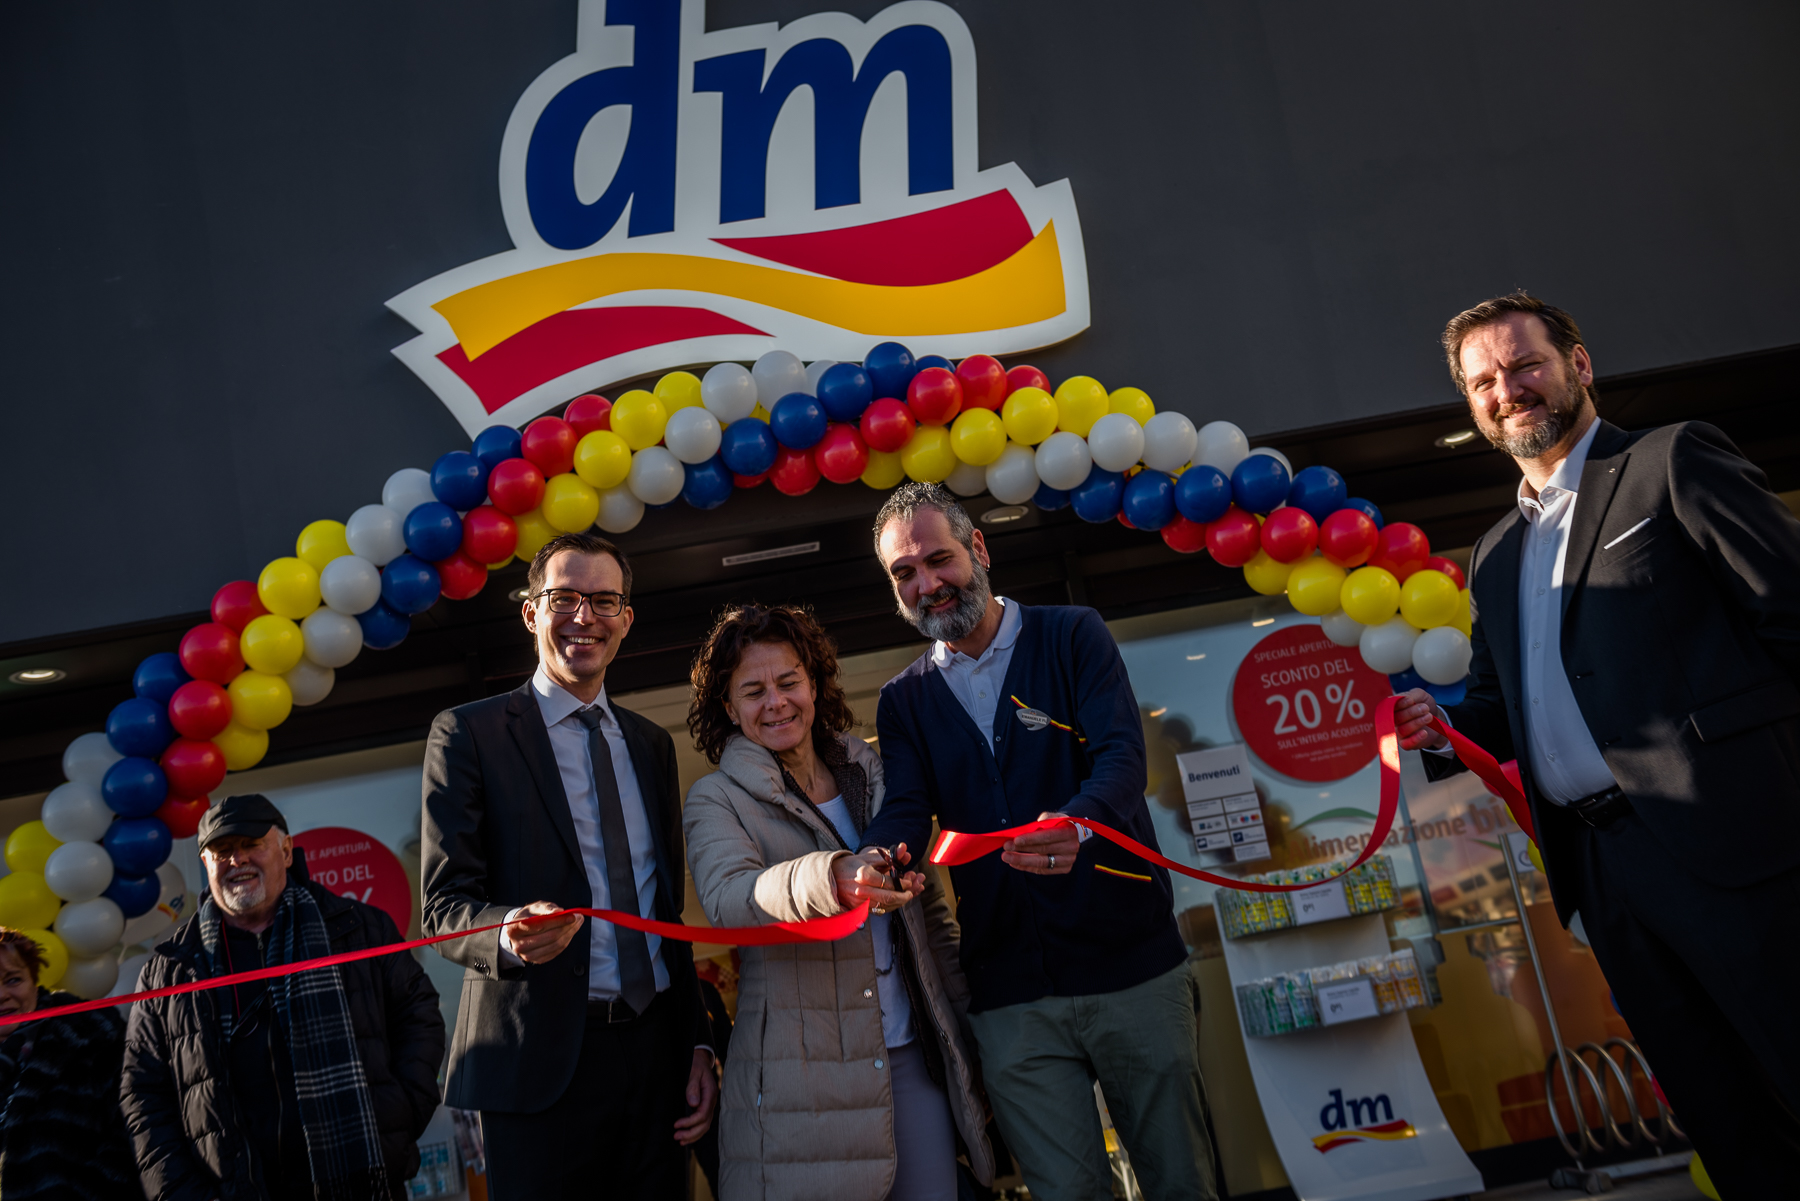 Apre a Peschiera del Garda il nuovo store di dm, la più grande catena commerciale europea  di prodotti per la cura della persona e della casa.